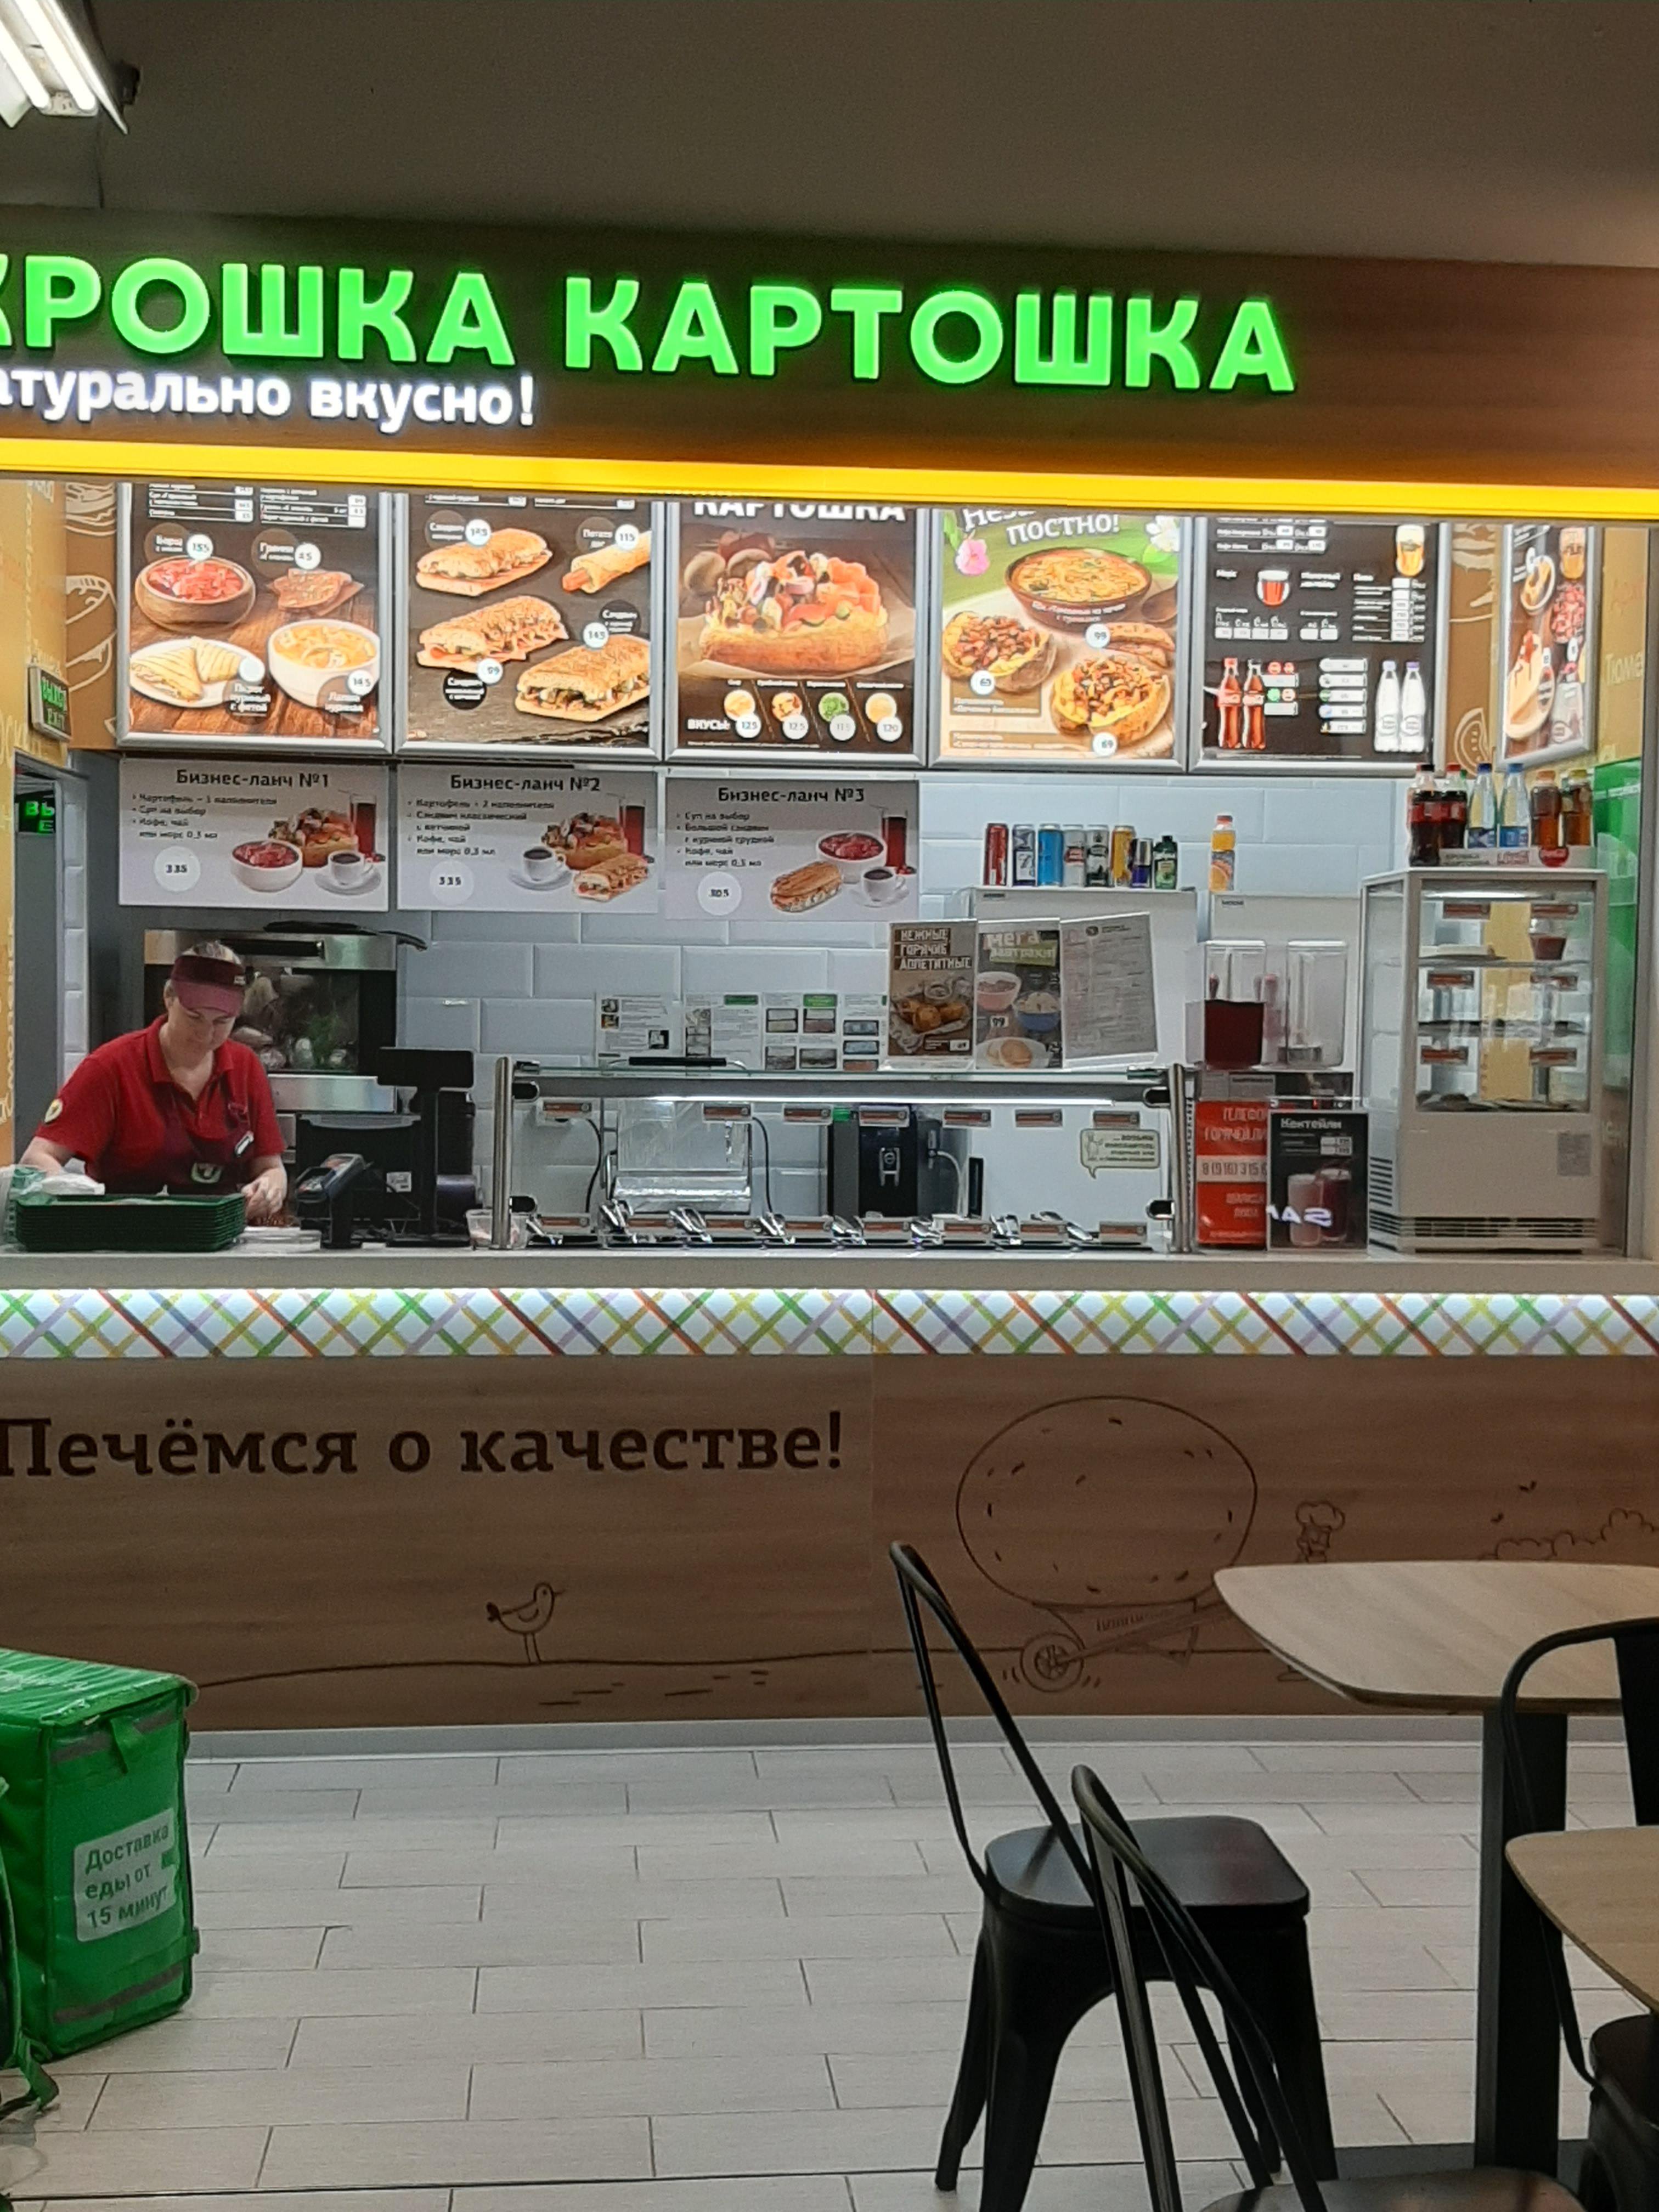 Крошка Картошка, кафе быстрого питания, улица Ярцевская, 25а, 3 этаж